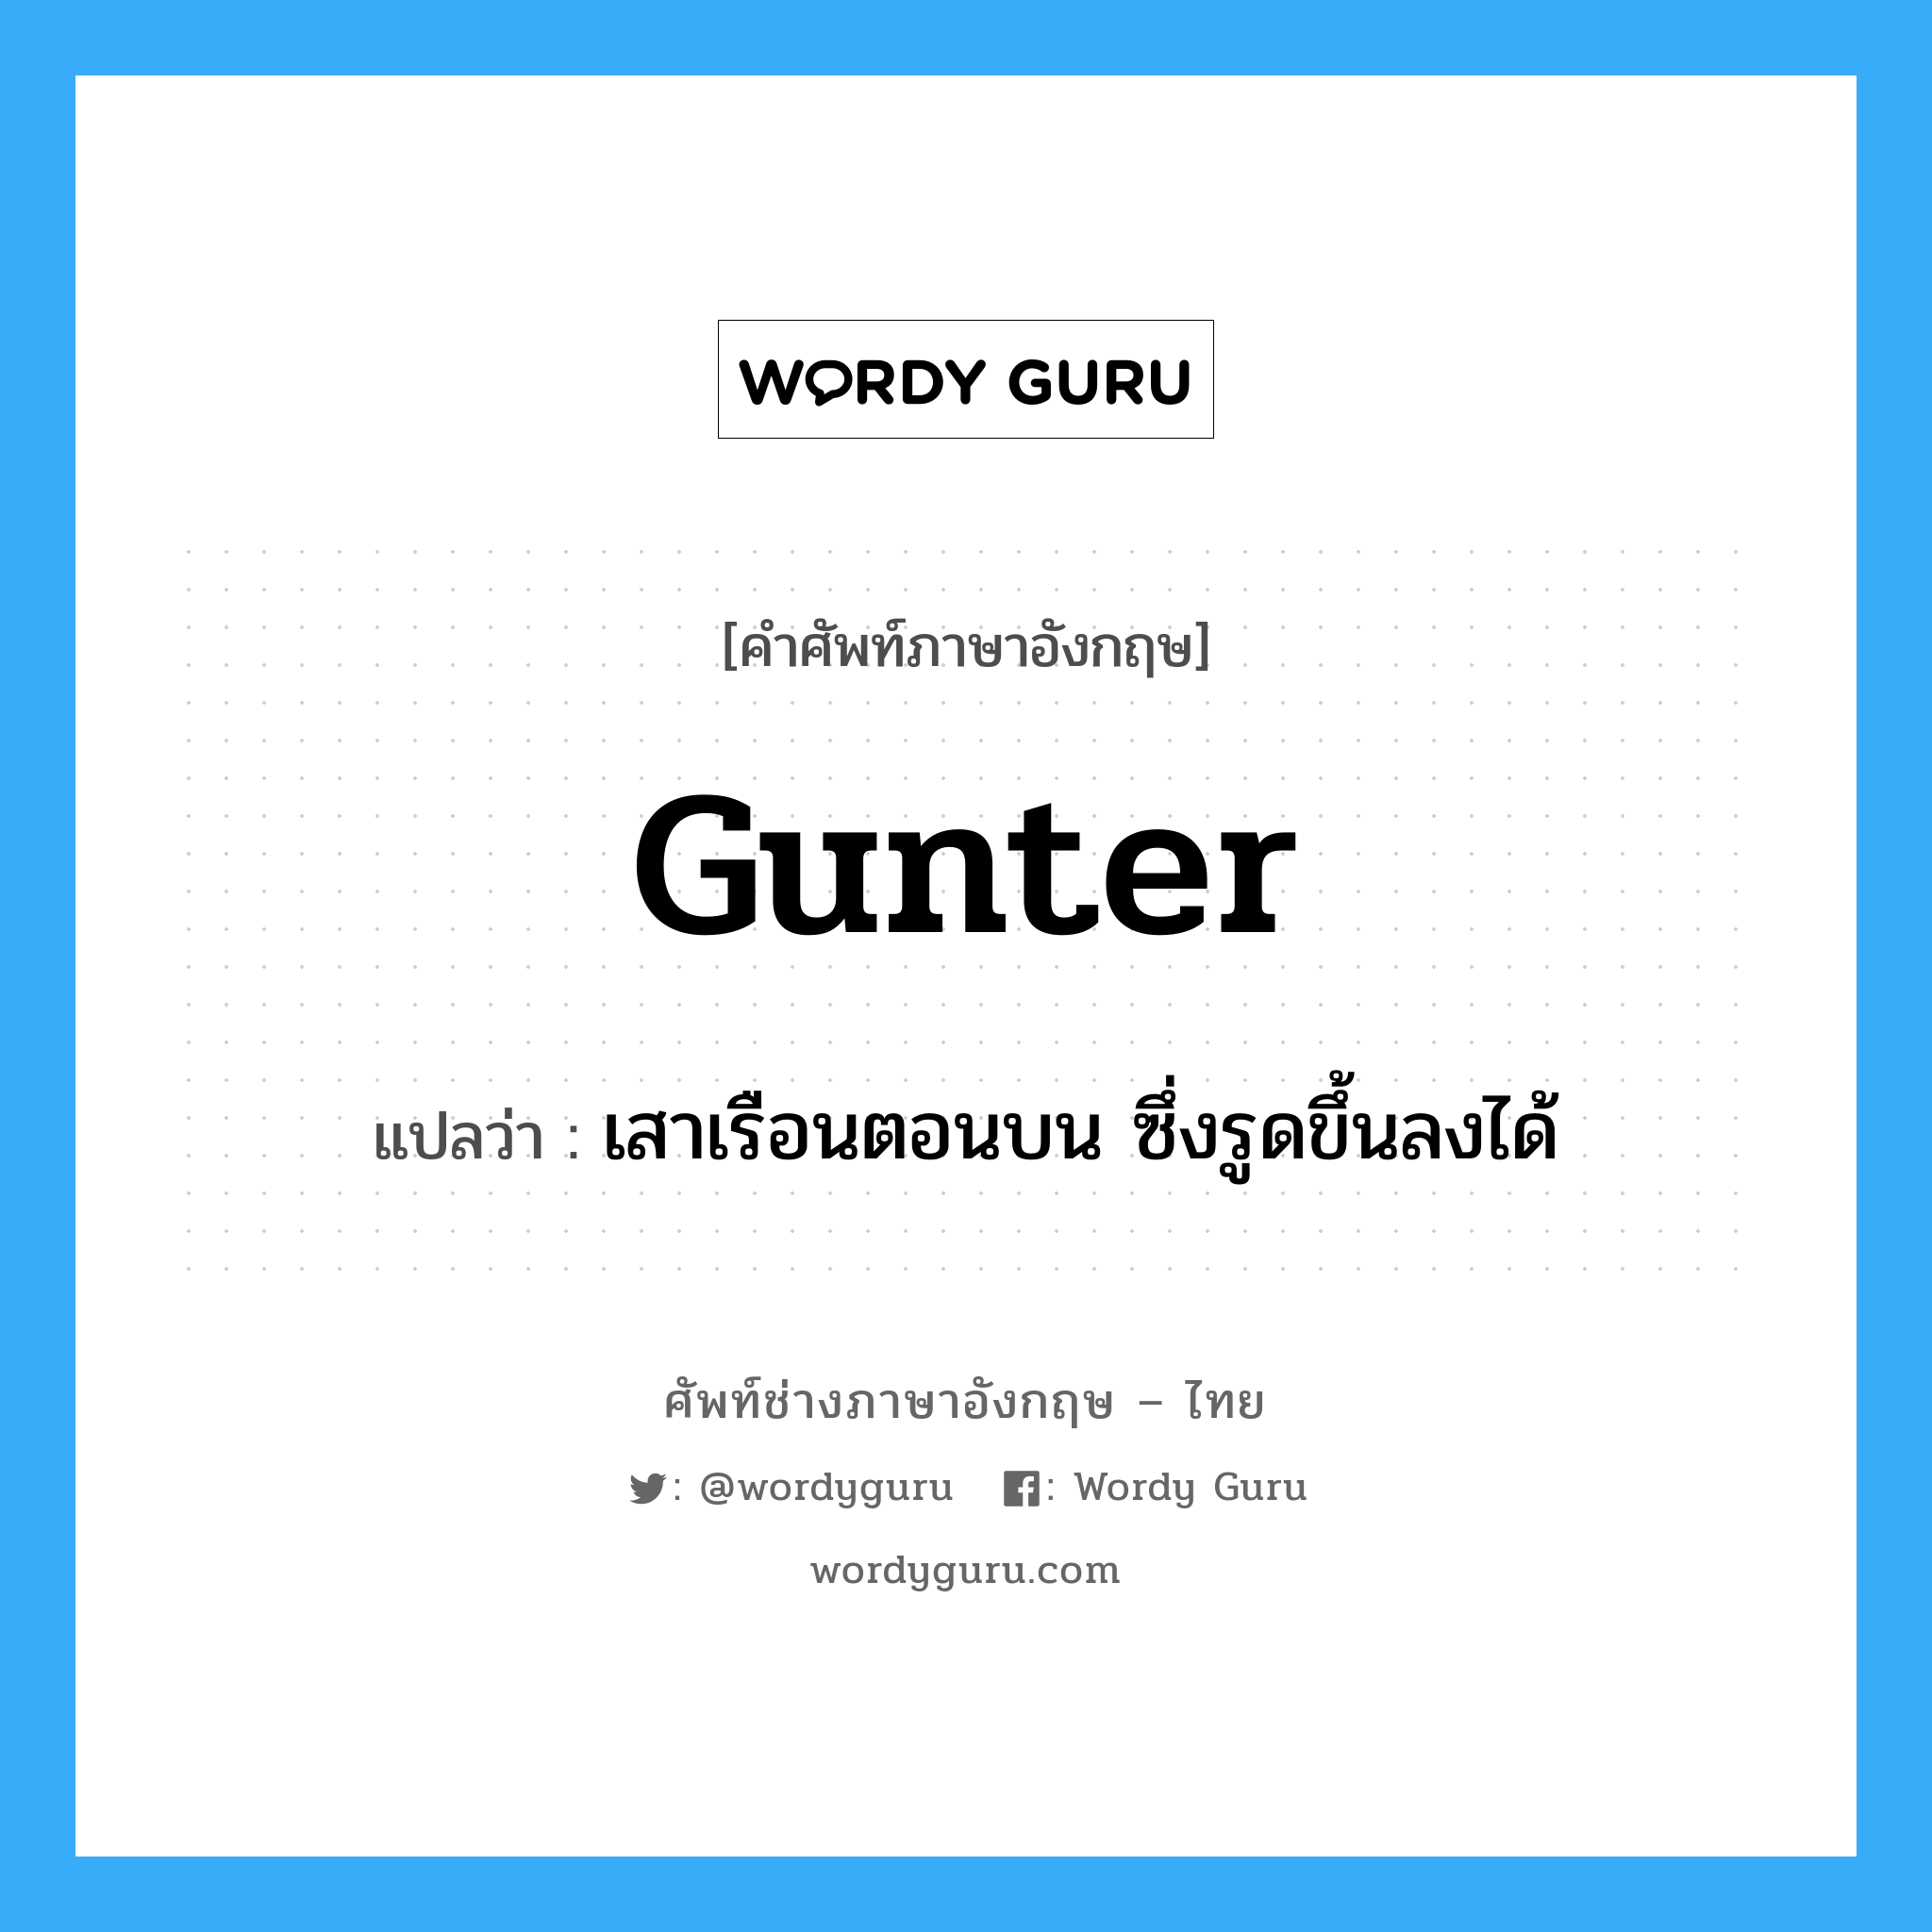 gunter แปลว่า?, คำศัพท์ช่างภาษาอังกฤษ - ไทย gunter คำศัพท์ภาษาอังกฤษ gunter แปลว่า เสาเรือนตอนบน ซึ่งรูดขึ้นลงได้